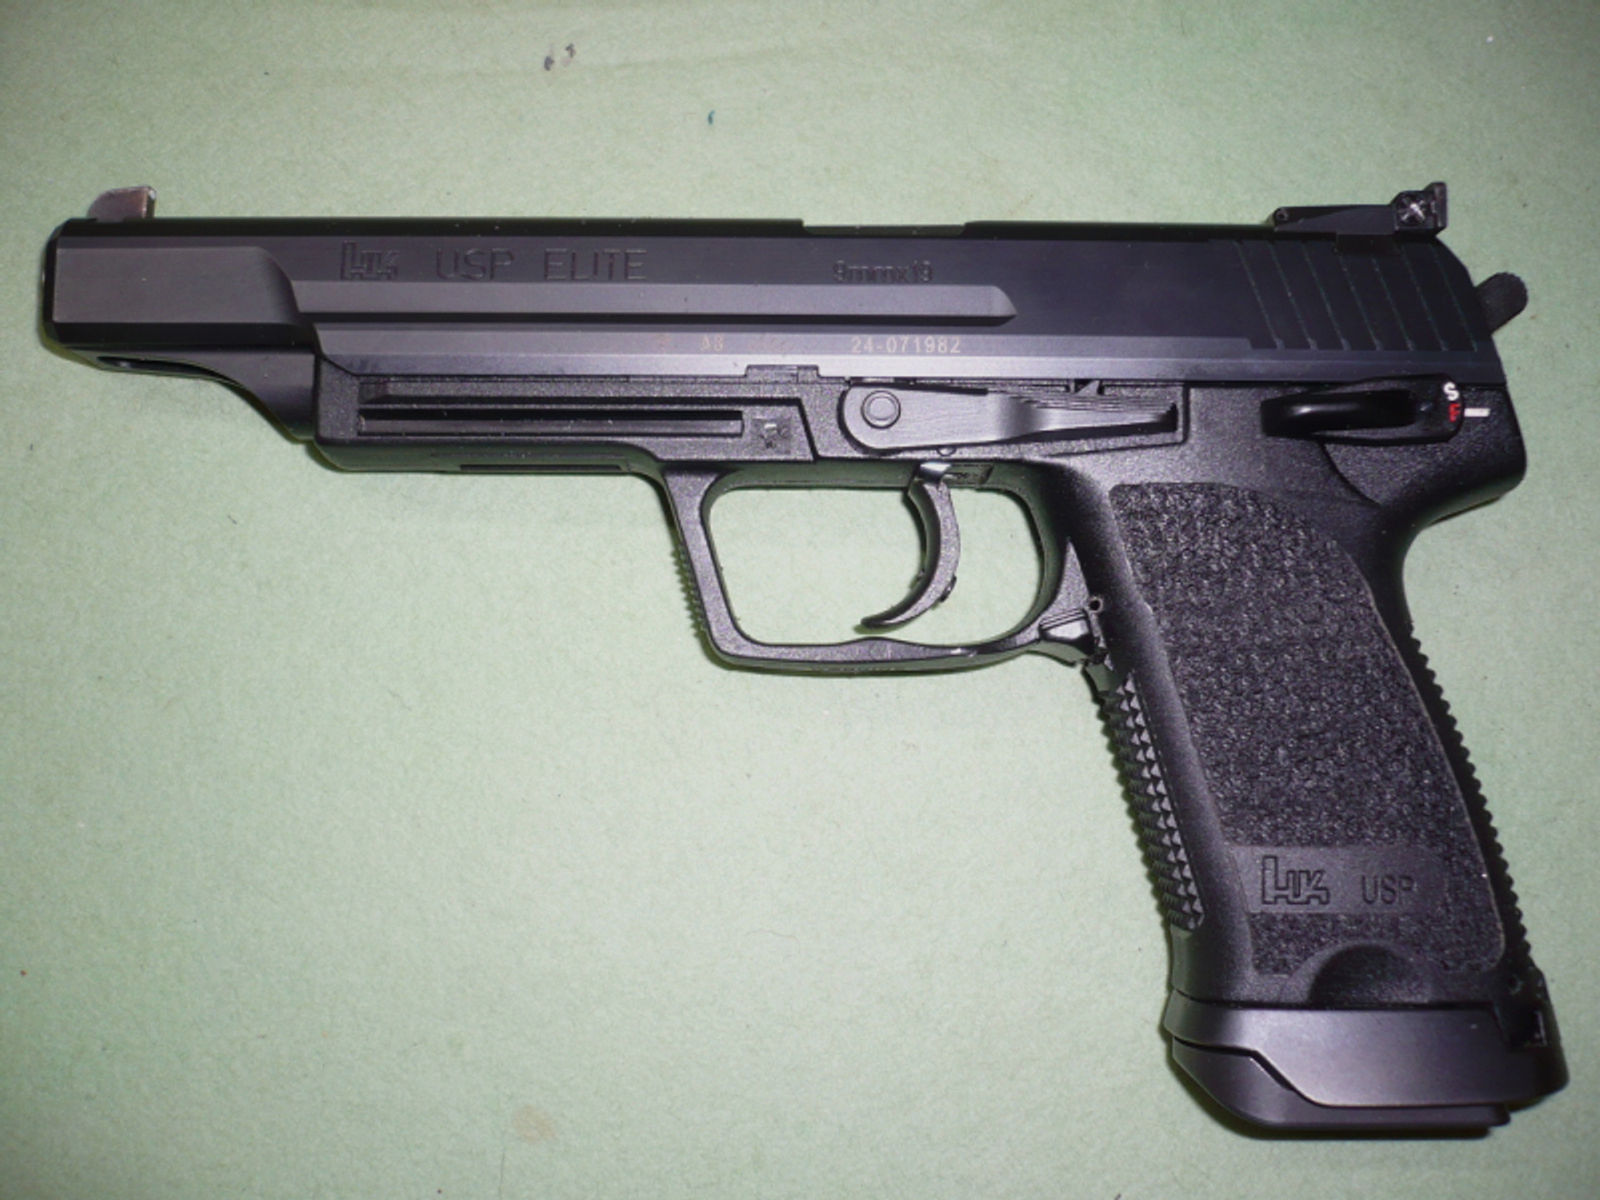 1 Pistole Heckler & Koch USP Elite, Kal. 9mmLuger